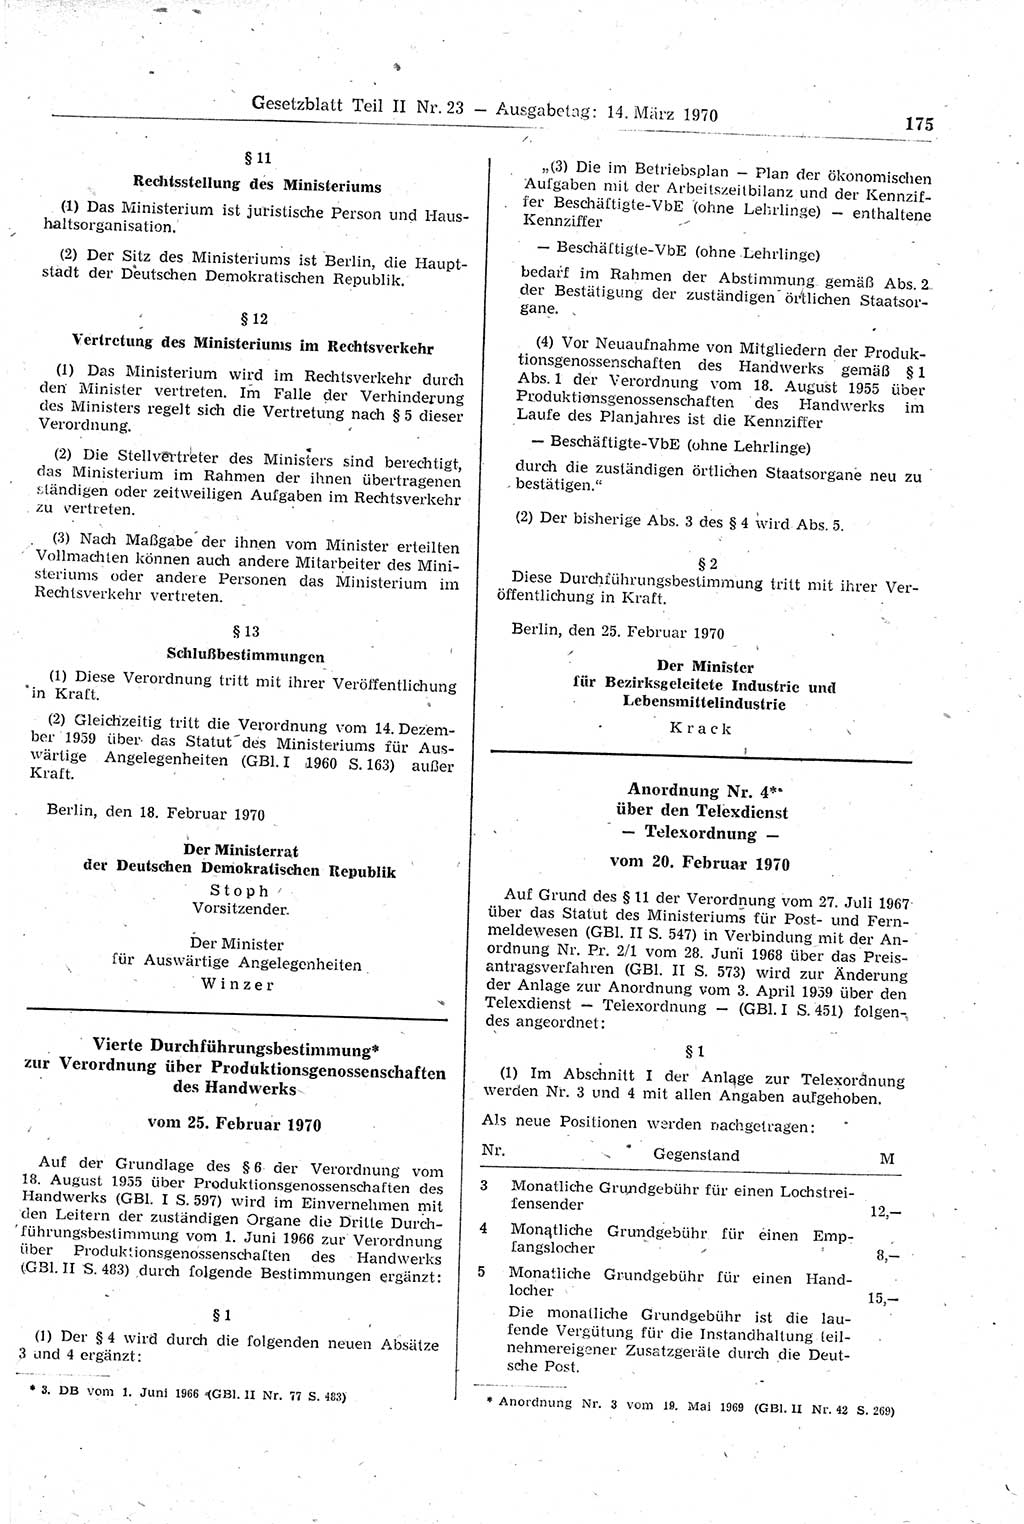 Gesetzblatt (GBl.) der Deutschen Demokratischen Republik (DDR) Teil ⅠⅠ 1970, Seite 175 (GBl. DDR ⅠⅠ 1970, S. 175)